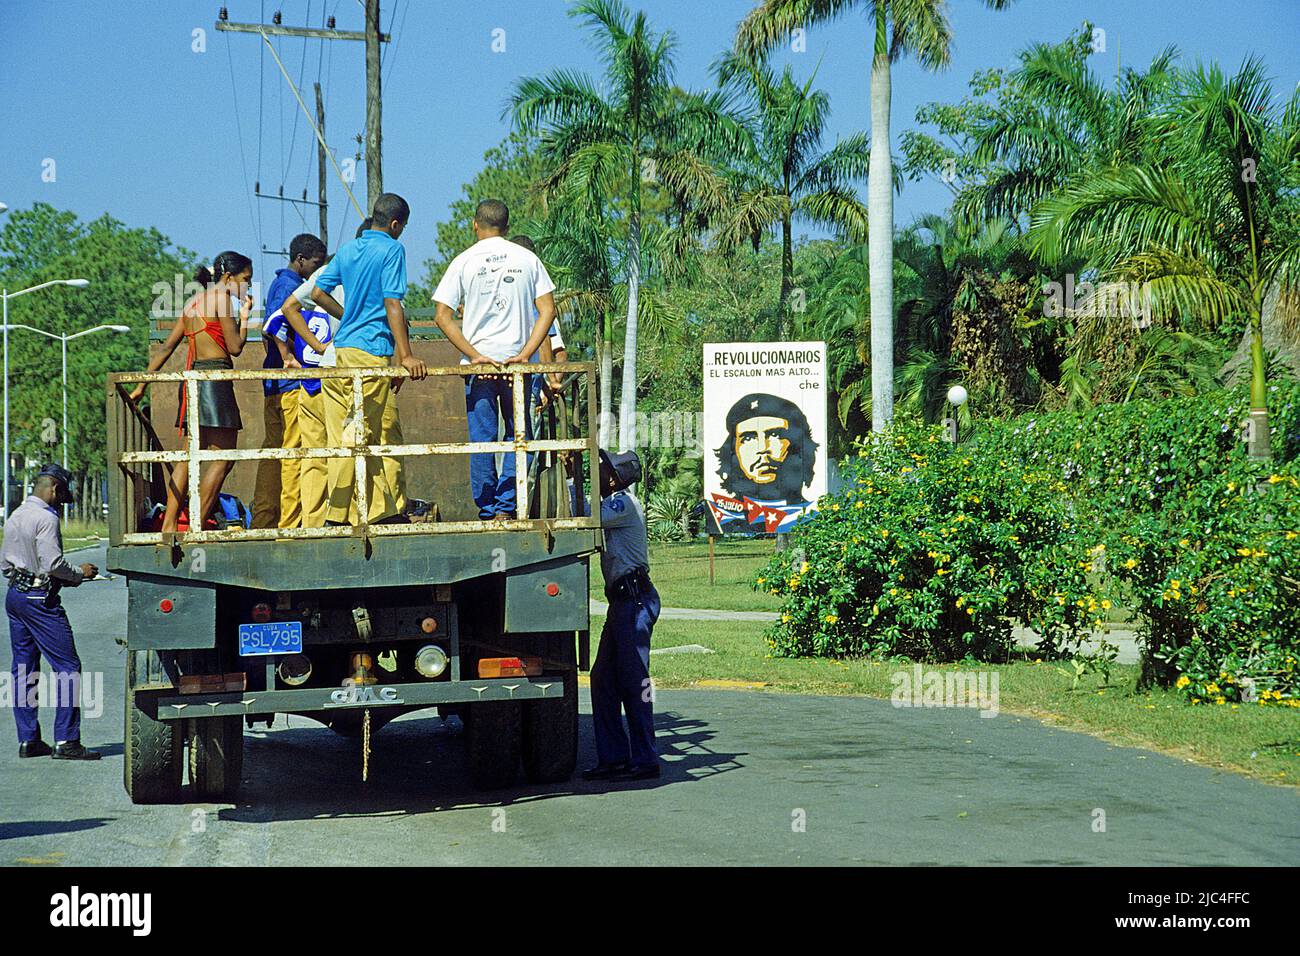 Contrôle de la circulation, la police contrôle le peuple cubain sur un camion, à côté d'une affiche de Che Guevara, Pinar del Rio, Cuba, Caraïbes Banque D'Images